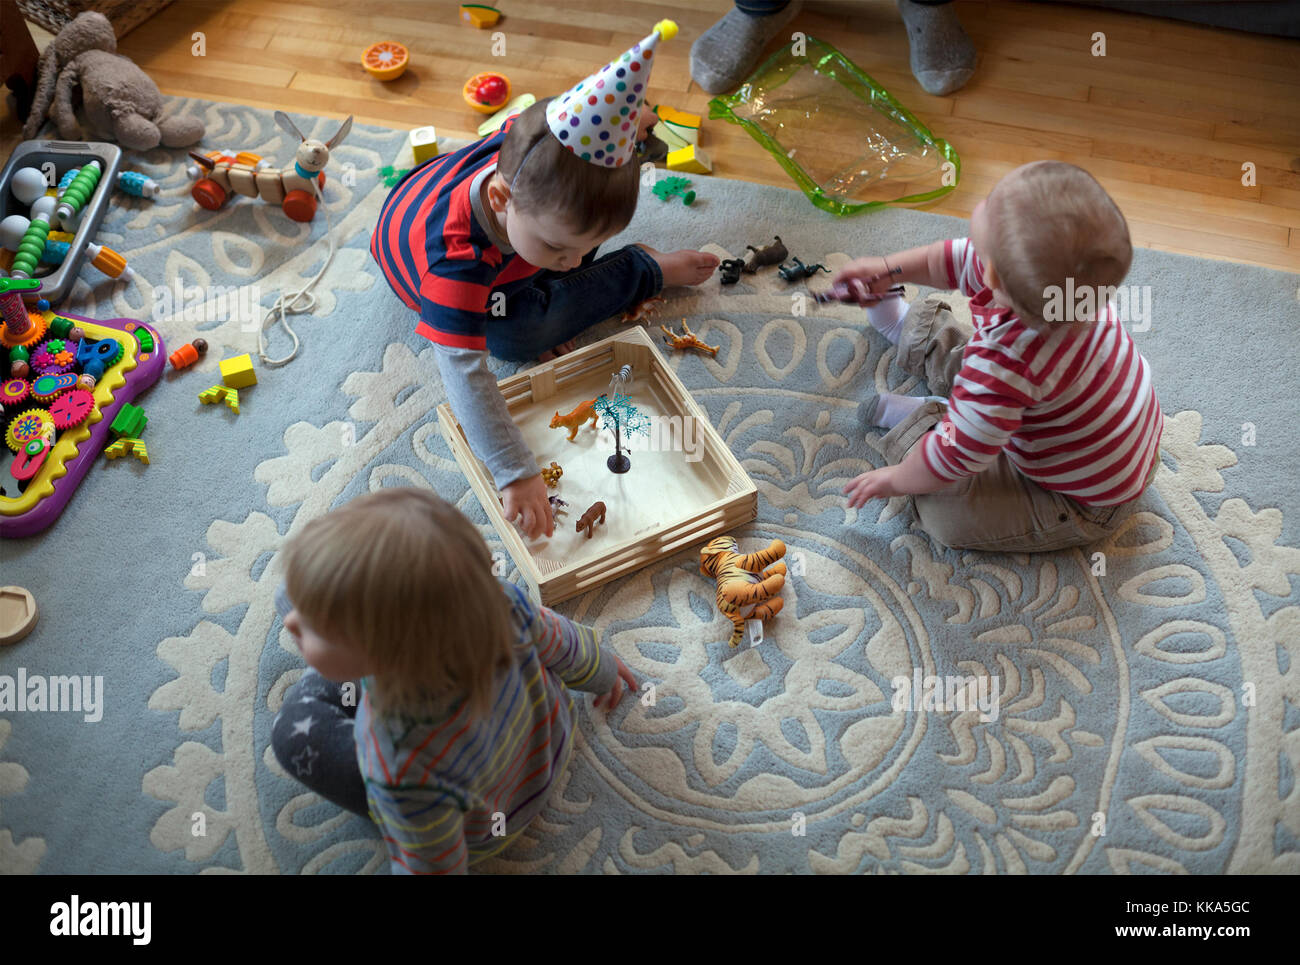 Kinder spielen auf dem Boden während einer Partei. Stockfoto